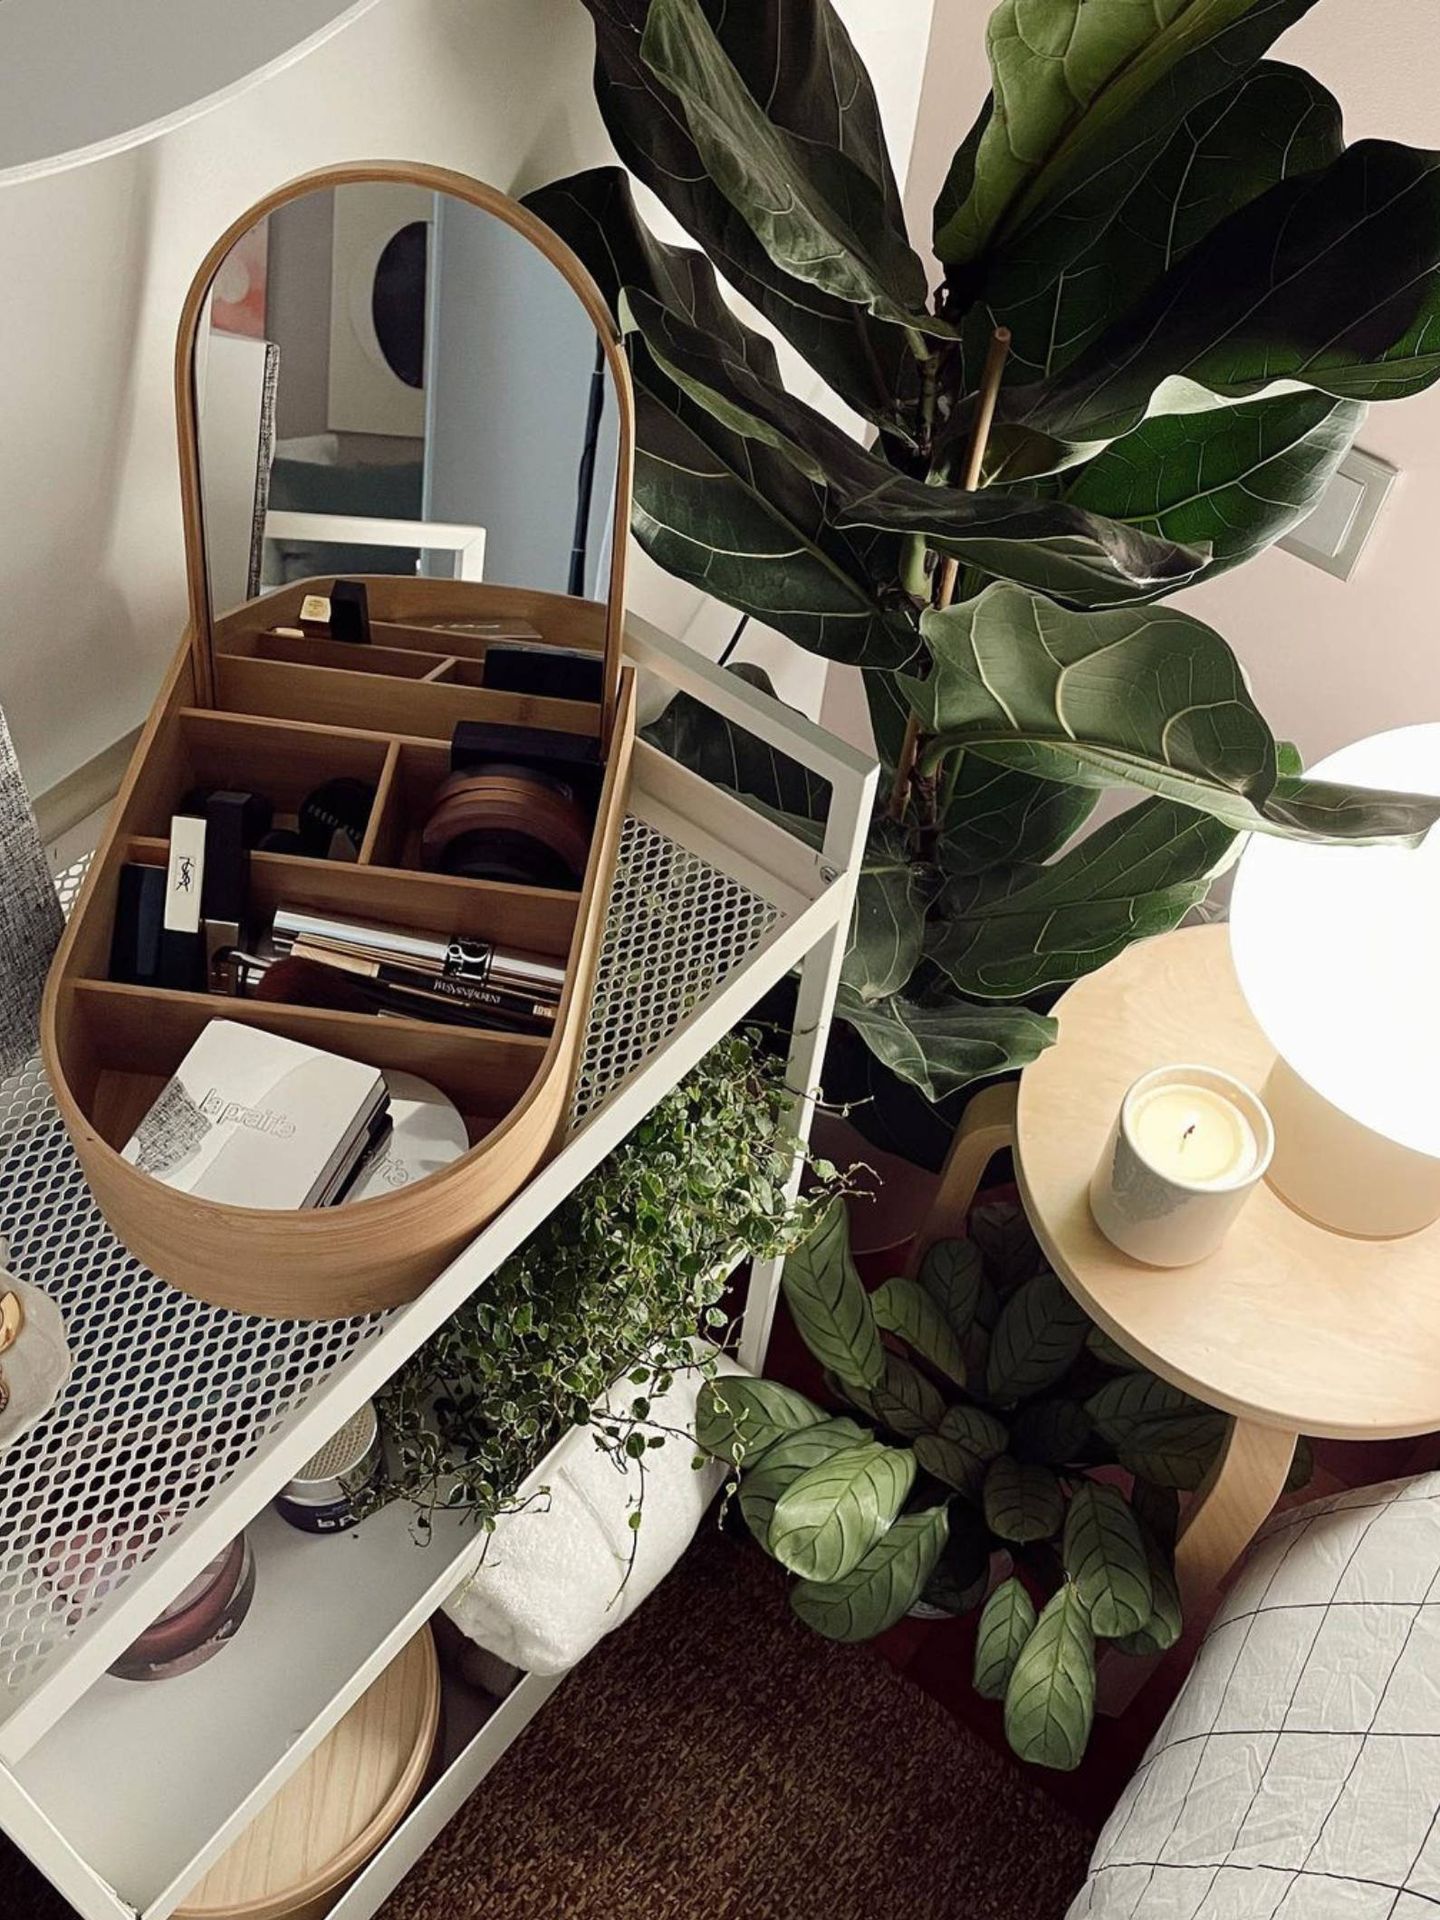 El spa en el dormitorio que nos proponen Ikea y Ana Noguera. (Instagram @vanillaandco_)